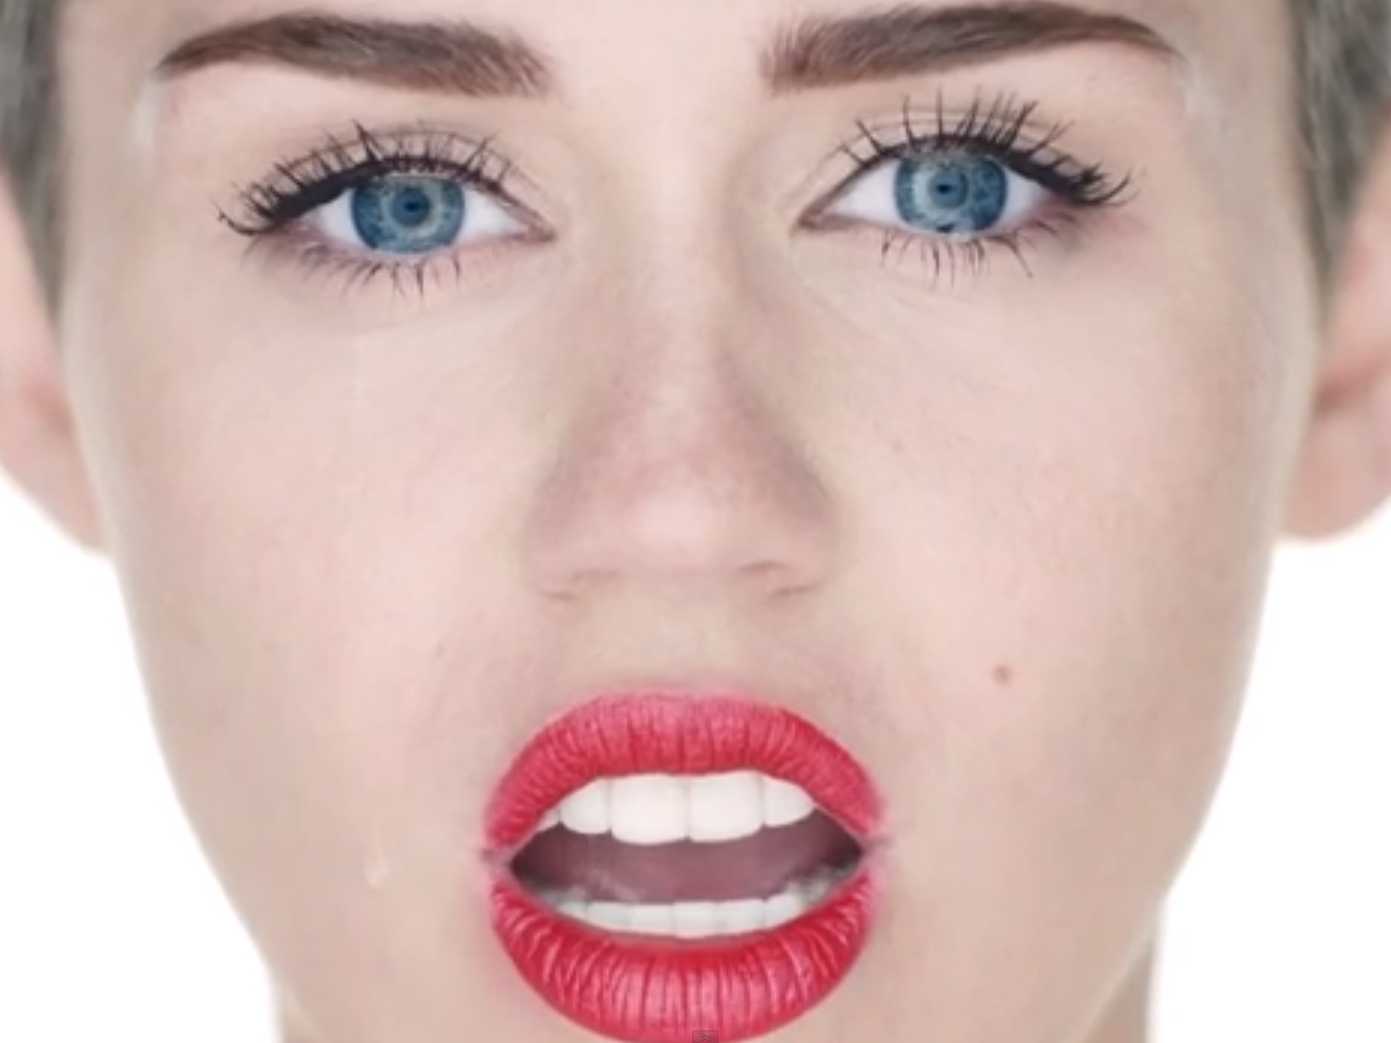 Miley Cyrus ricoverata: ultime notizie stato di salute e nuove date concerti